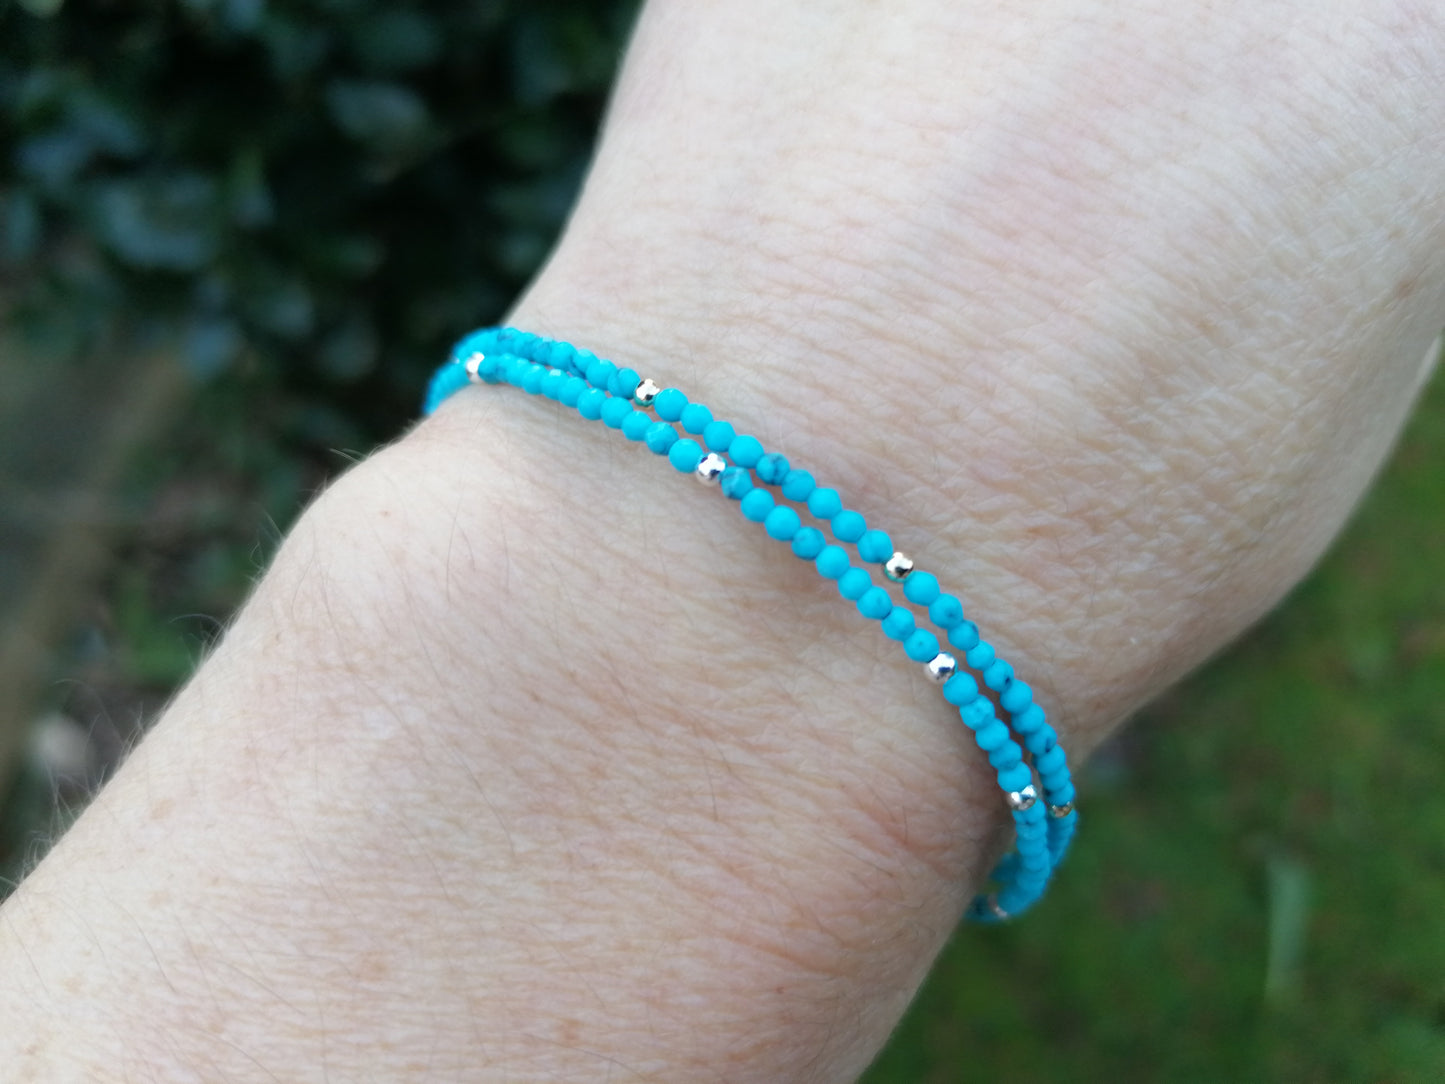 Skinny turquoise bracelet in sterling silver or gold filled. December birthstone bracelet.